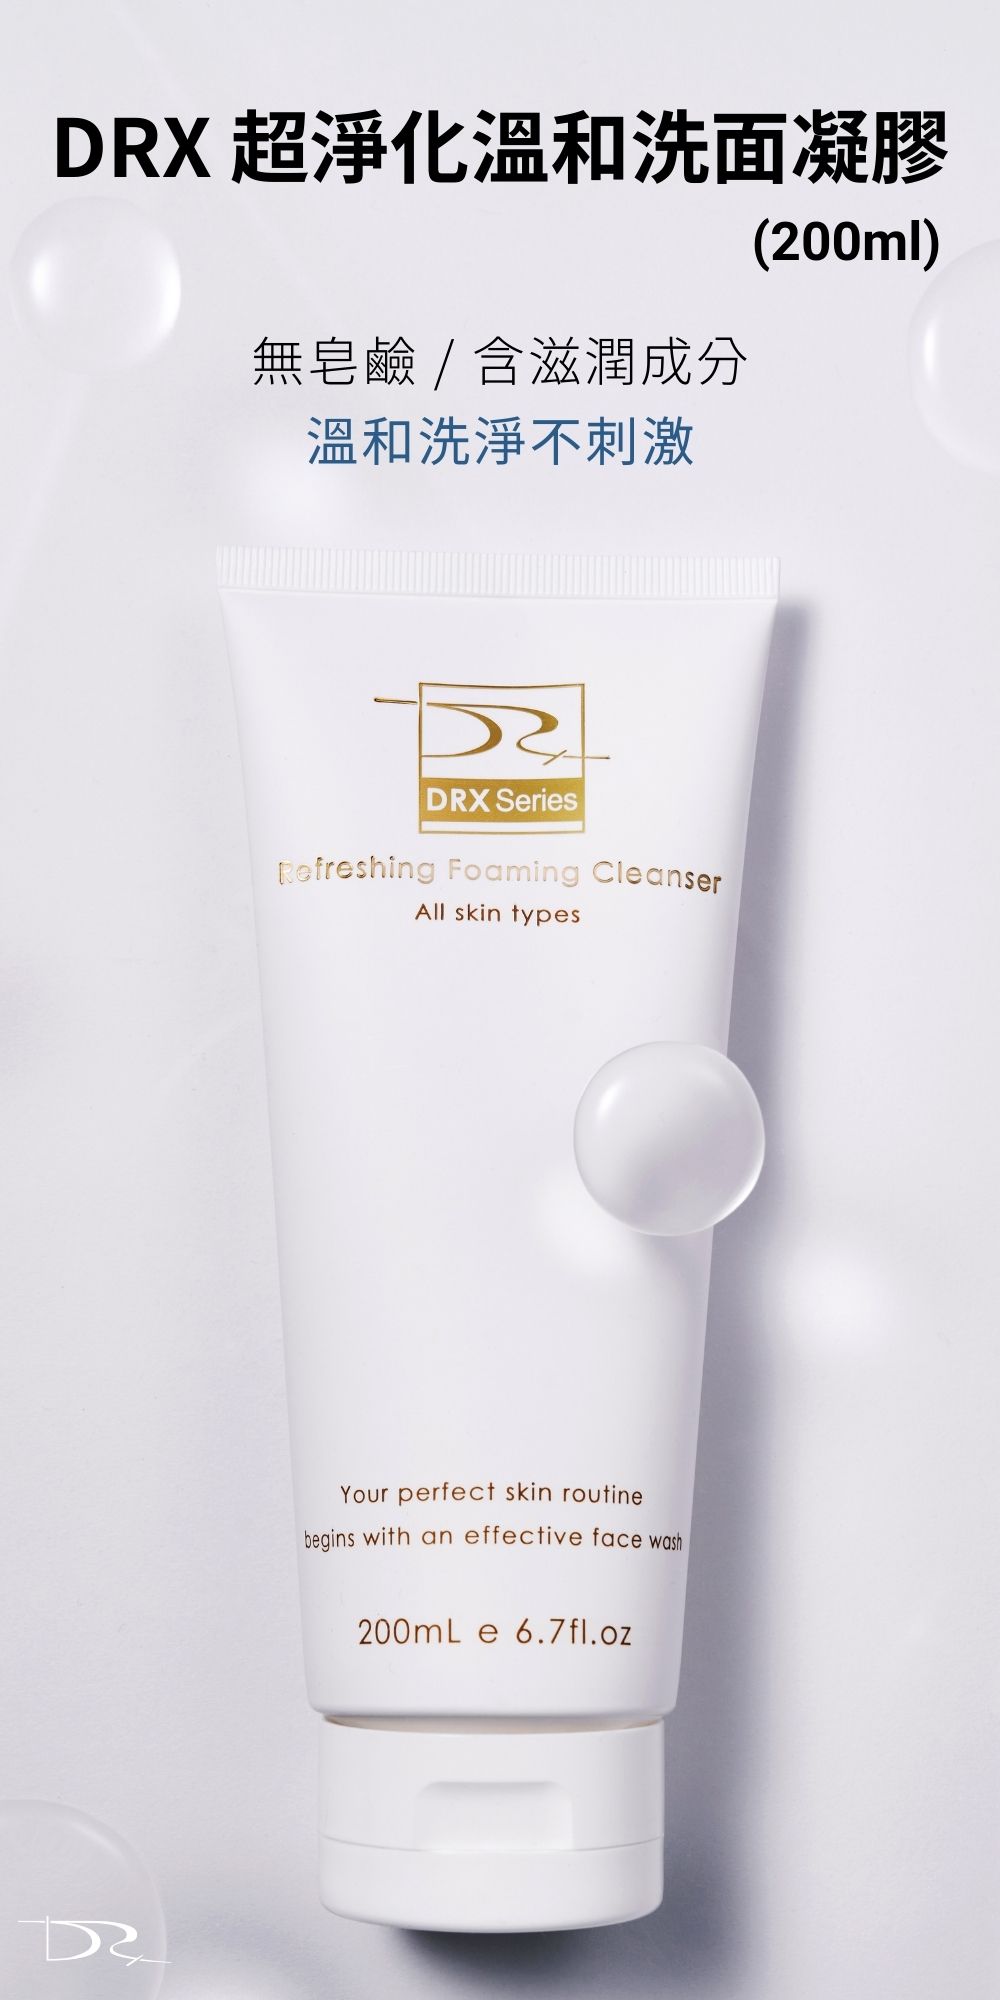 要挑選美白產品就到DRX達特仕，DRX達特仕的DRX深層潔淨美白套組，幫你正確清潔毛孔、改善粉刺，使肌膚保持柔滑、水潤、潔淨。DRX全新的美白組合，讓你擁有人見人愛的亮白膚質！